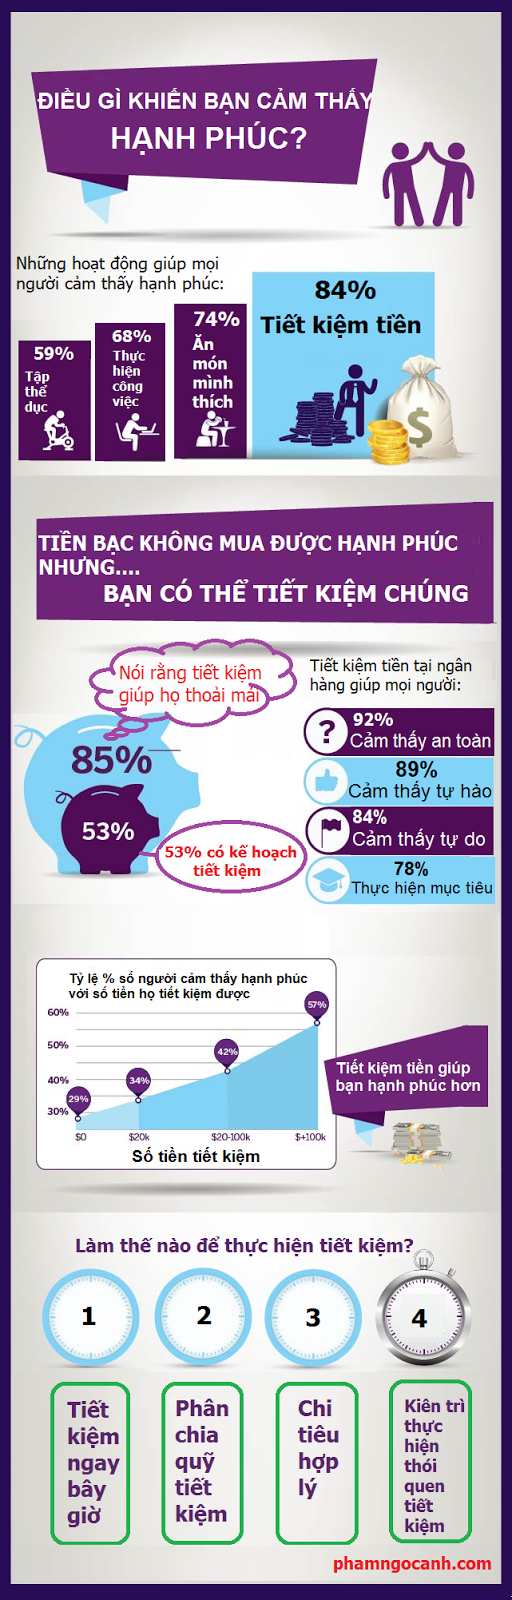 vforum.vn-290639-infographic-quan-ly-tai-chinh-ca-nhan-hieu-qua-va-thong-minh.jpg